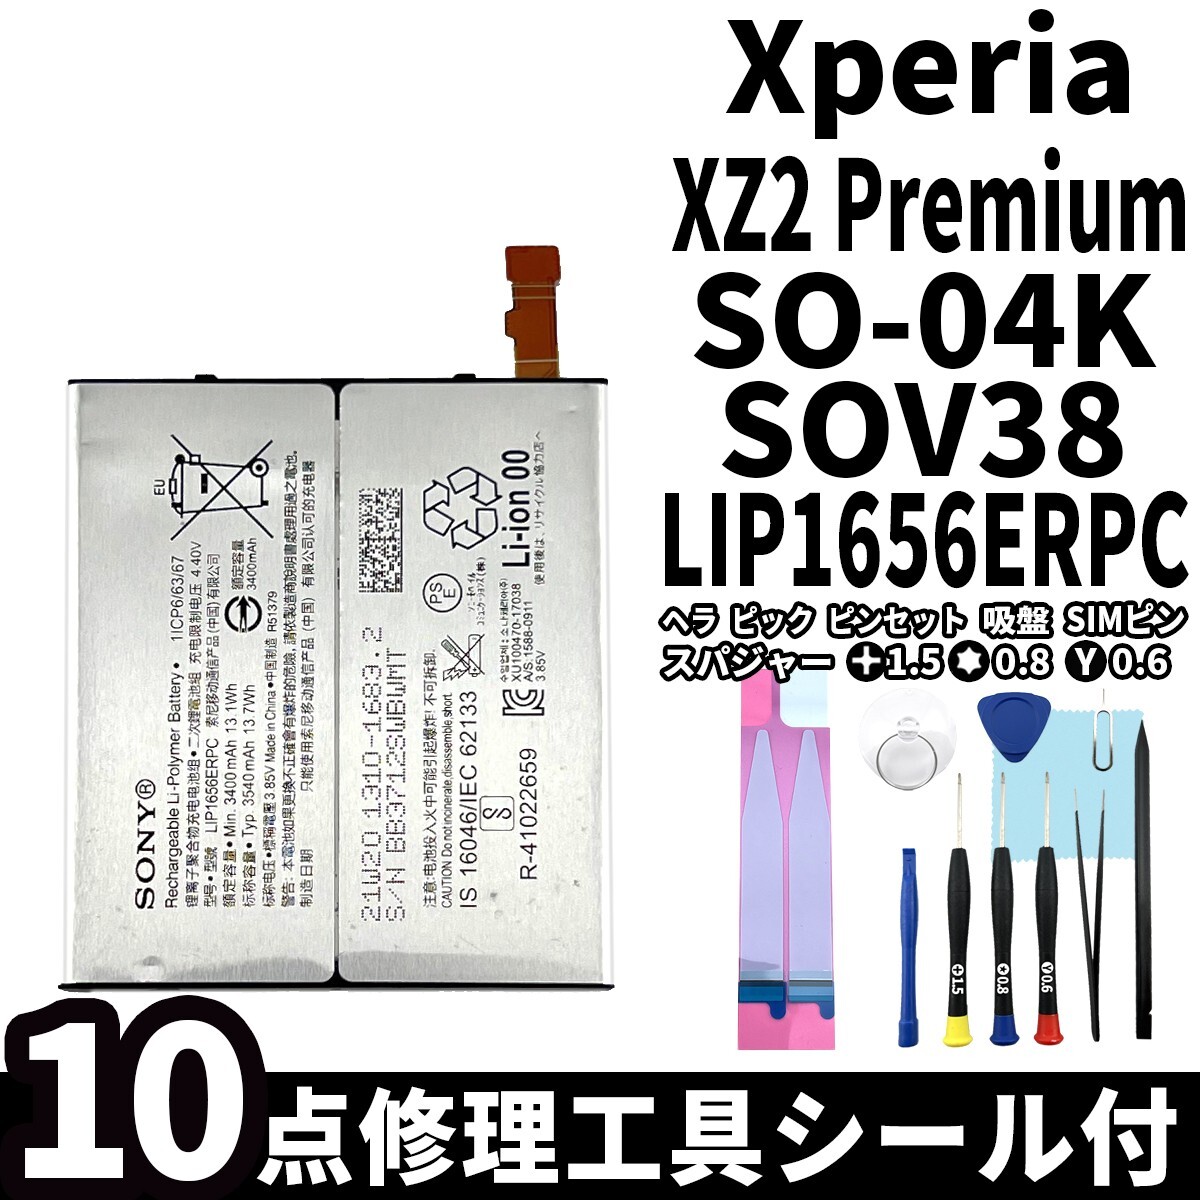 国内即日発送!純正同等新品!Xperia XZ2 Premium バッテリー LIP1656ERPC SO-04K SOV38 電池パック交換 内蔵battery 両面テープ 修理工具付_画像1